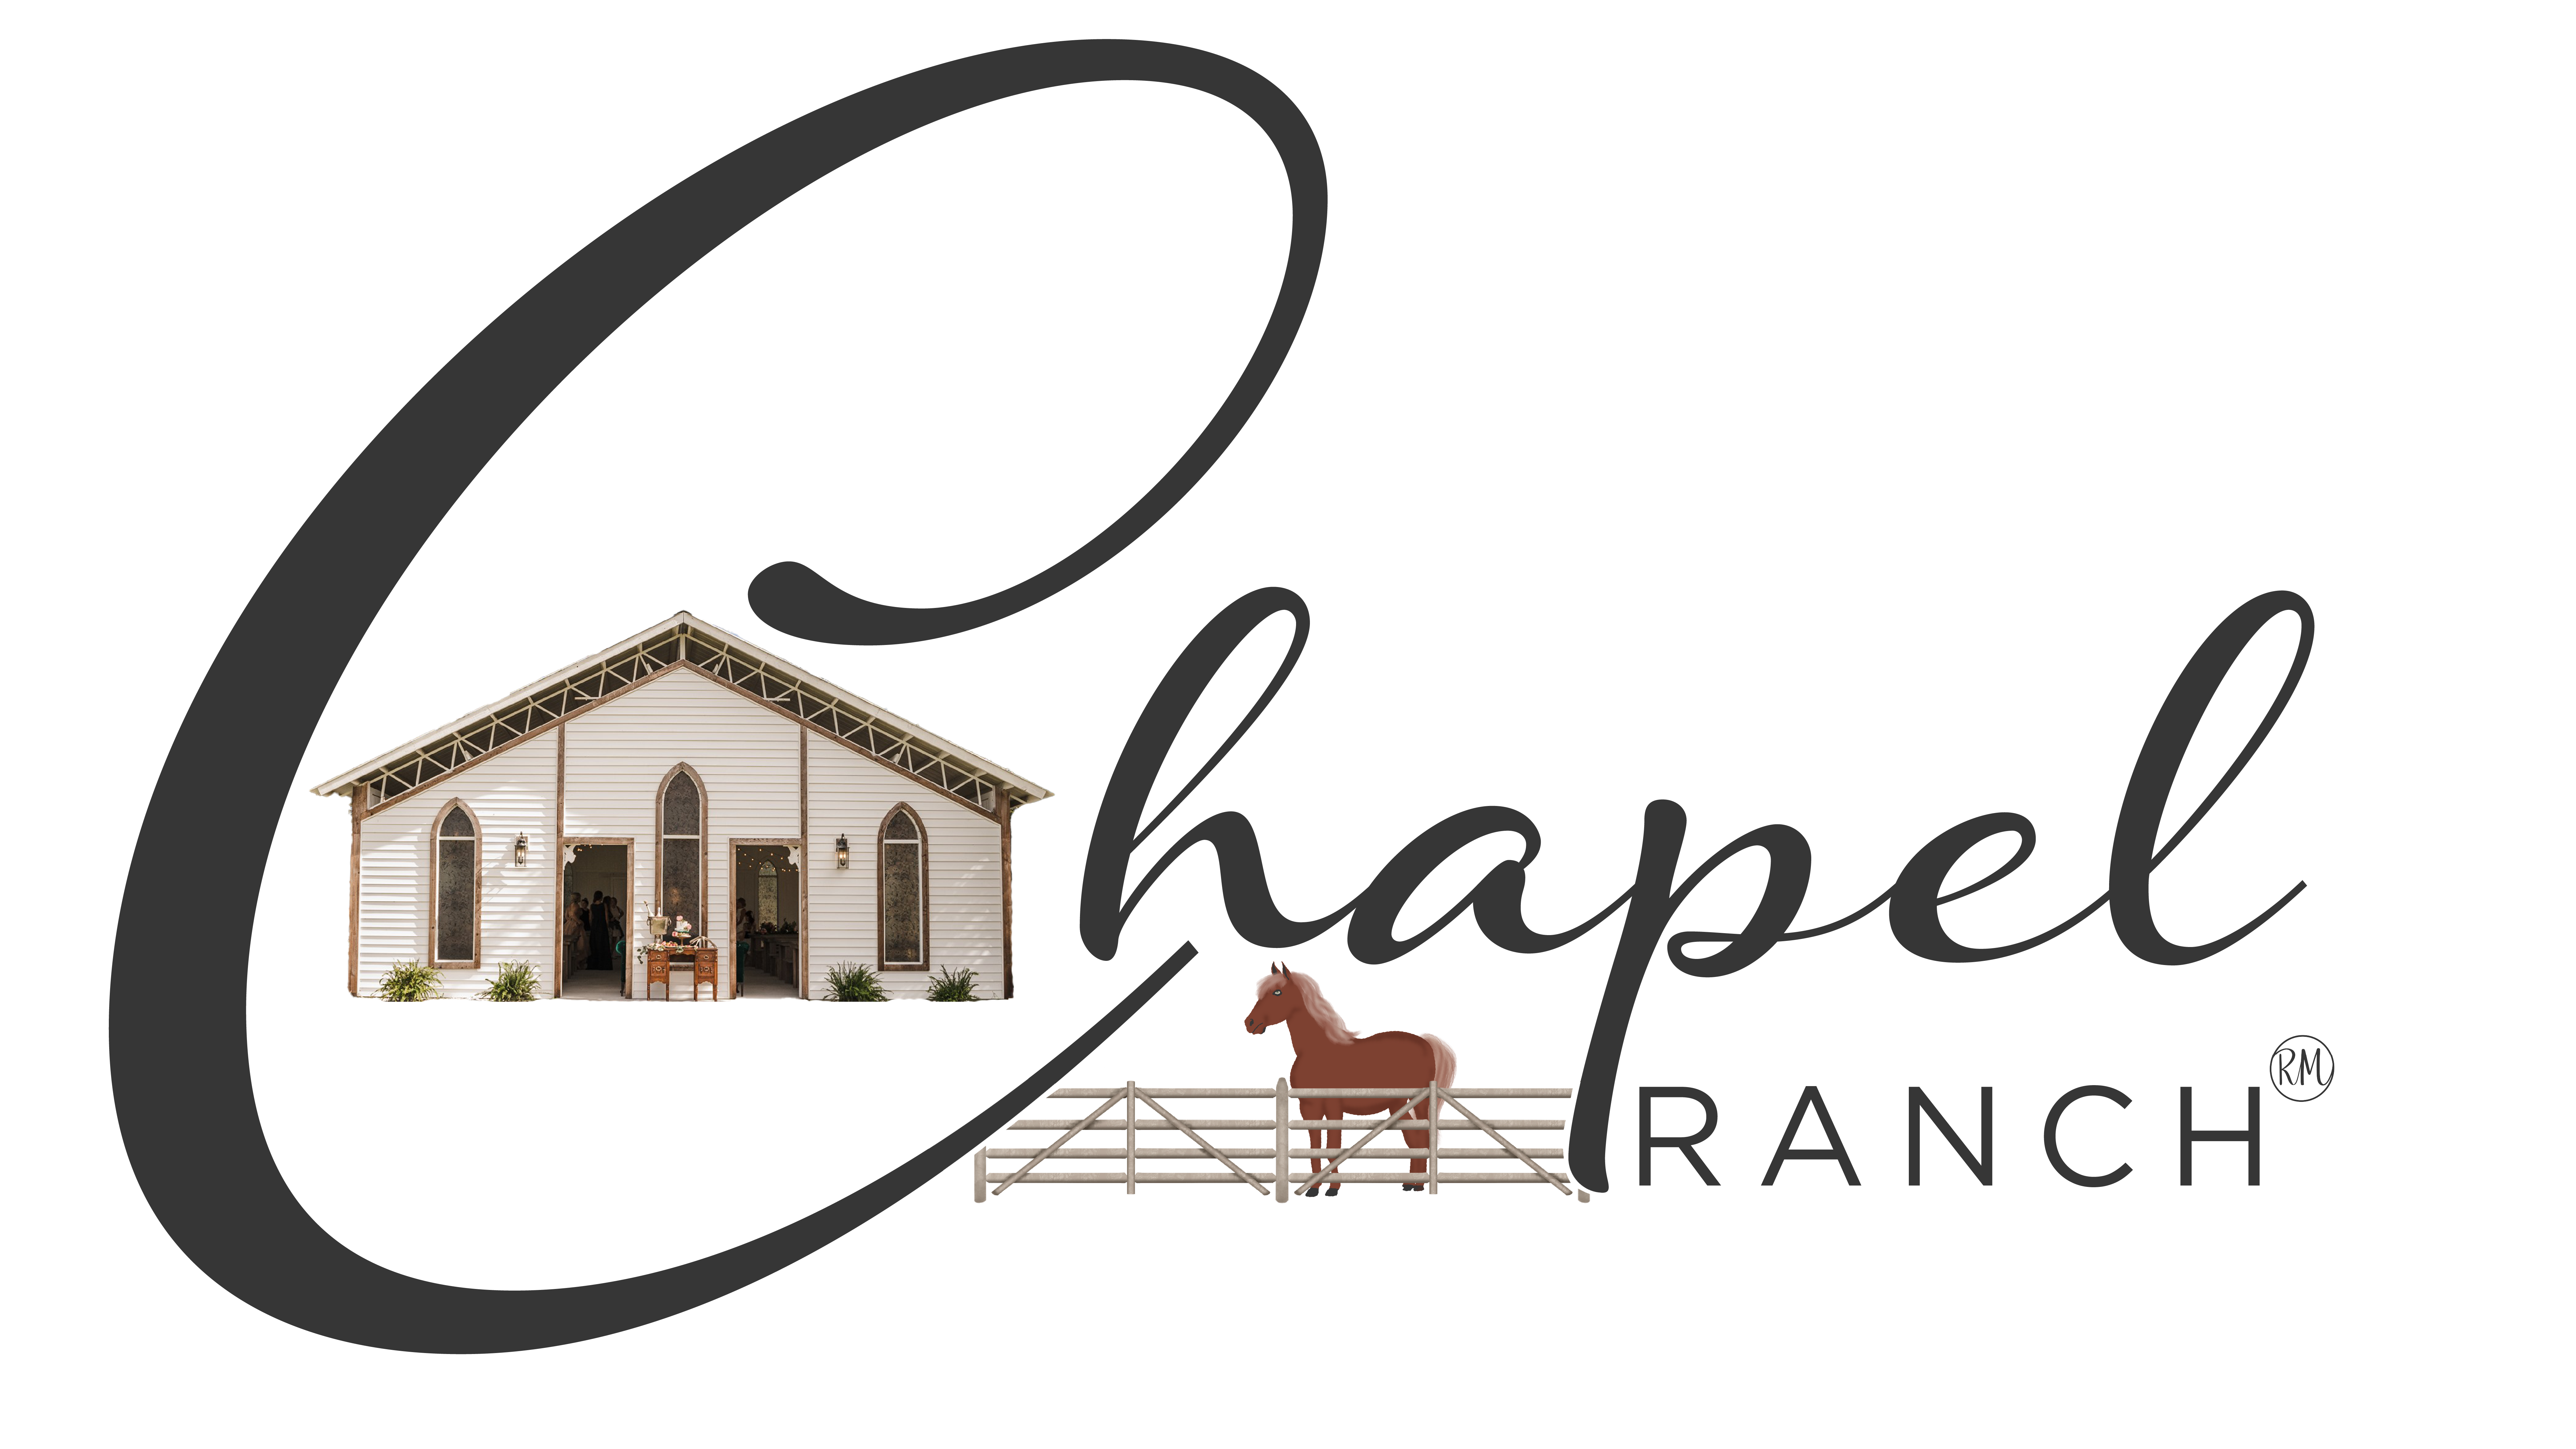 Chapel Ranch - Vero Beach, FL. | Weddings & Special Events